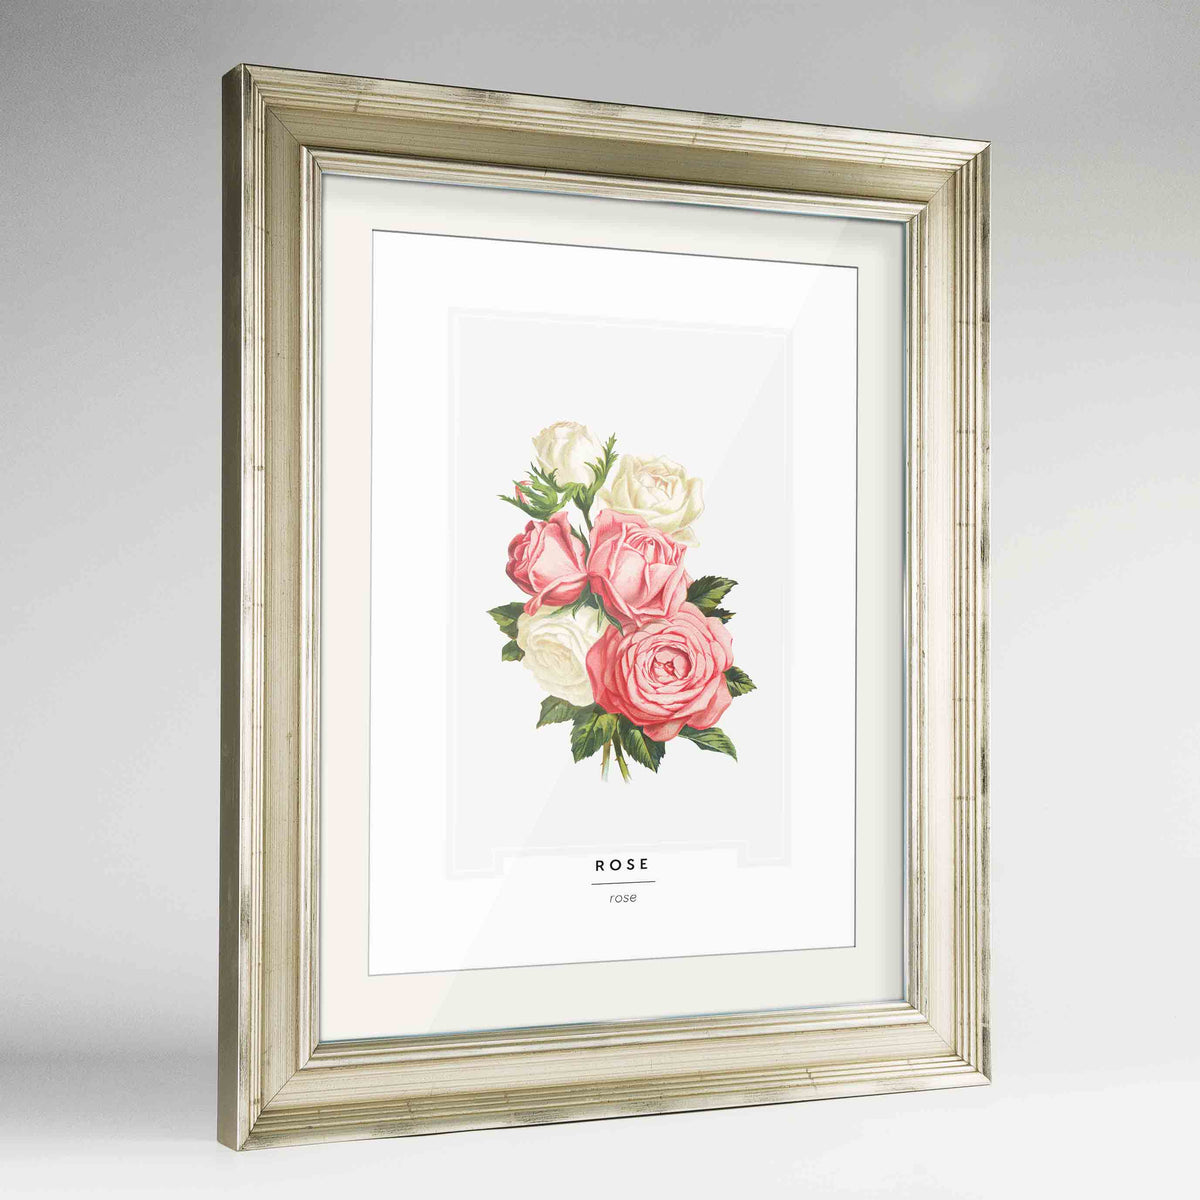 Rose Botanical Art Print - Framed